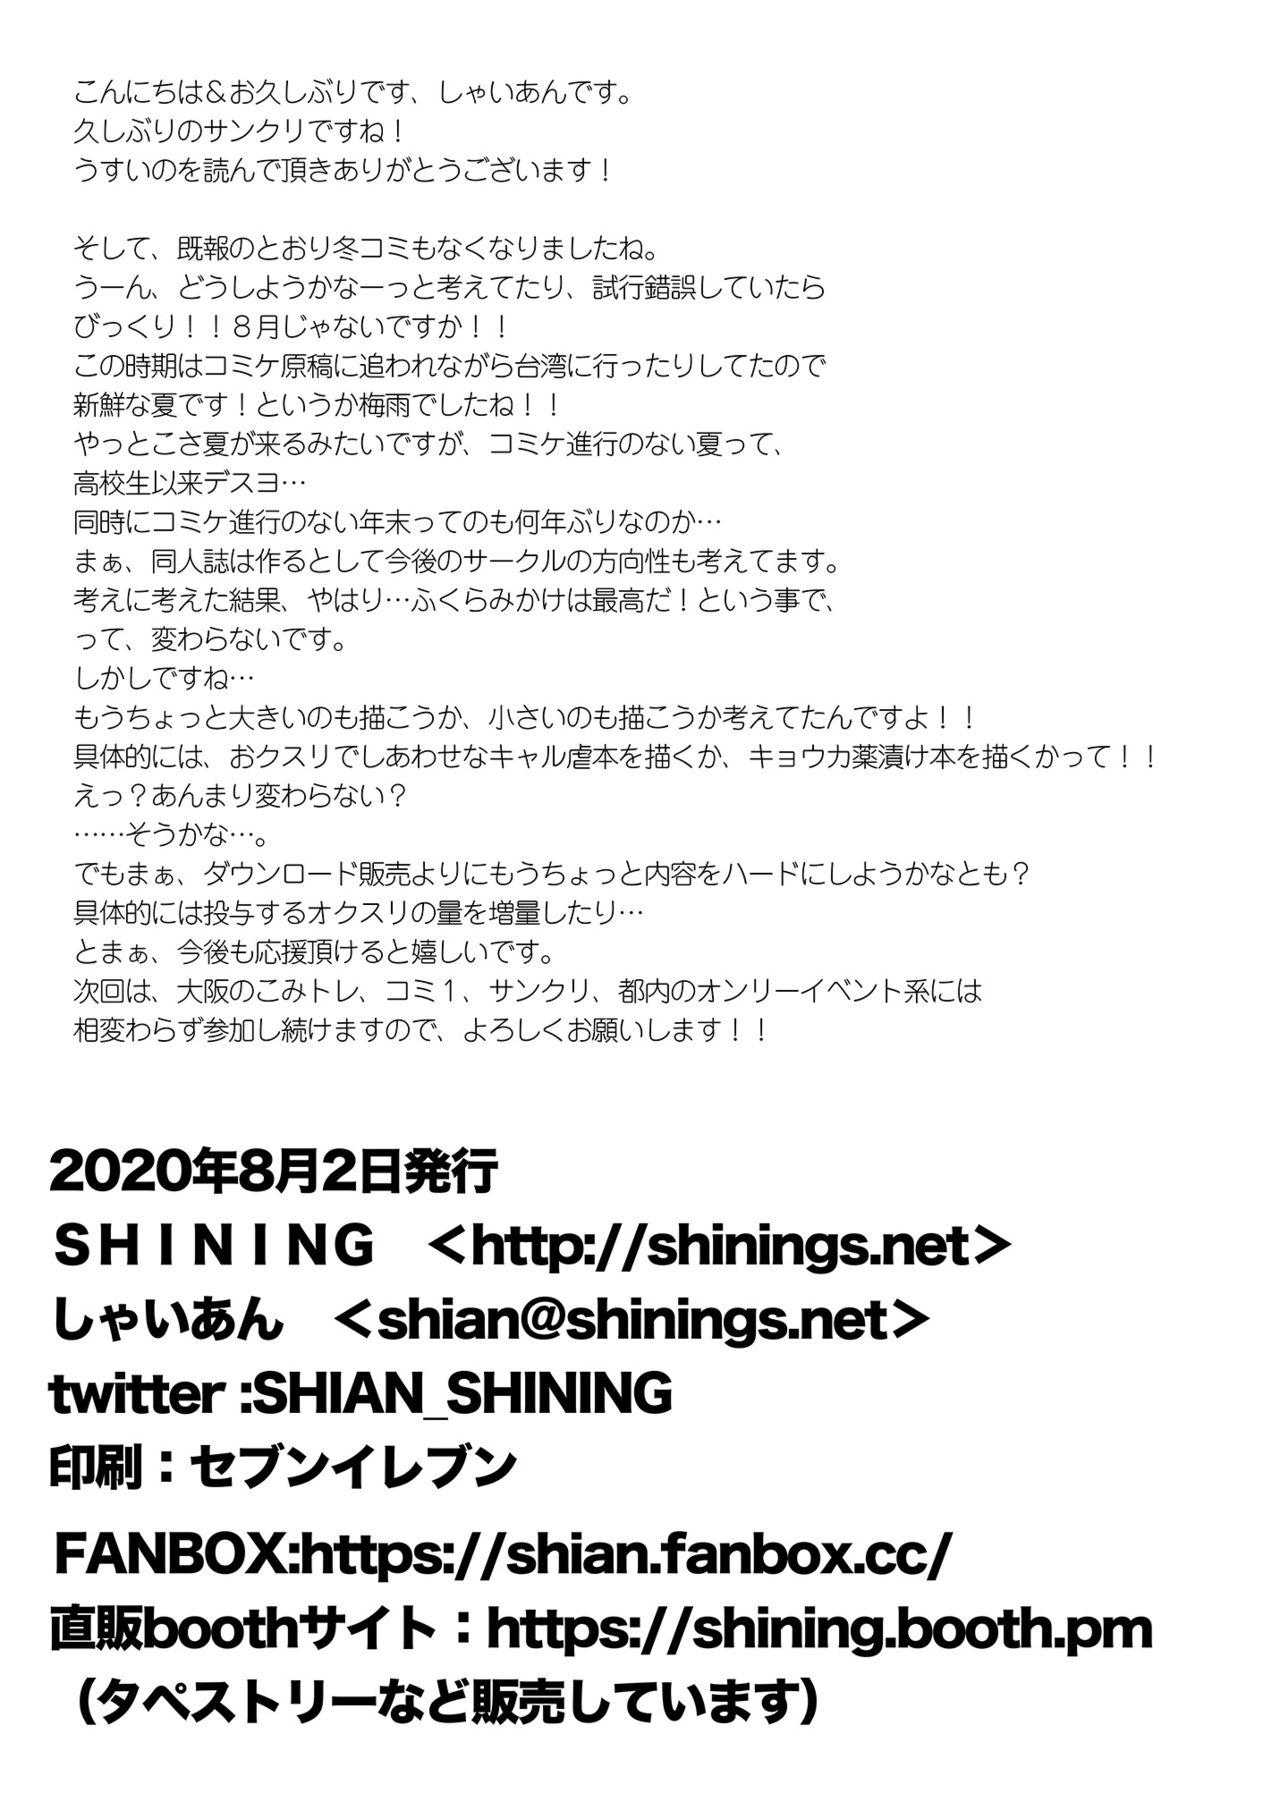 SHINING EXPRESS SC202008 7